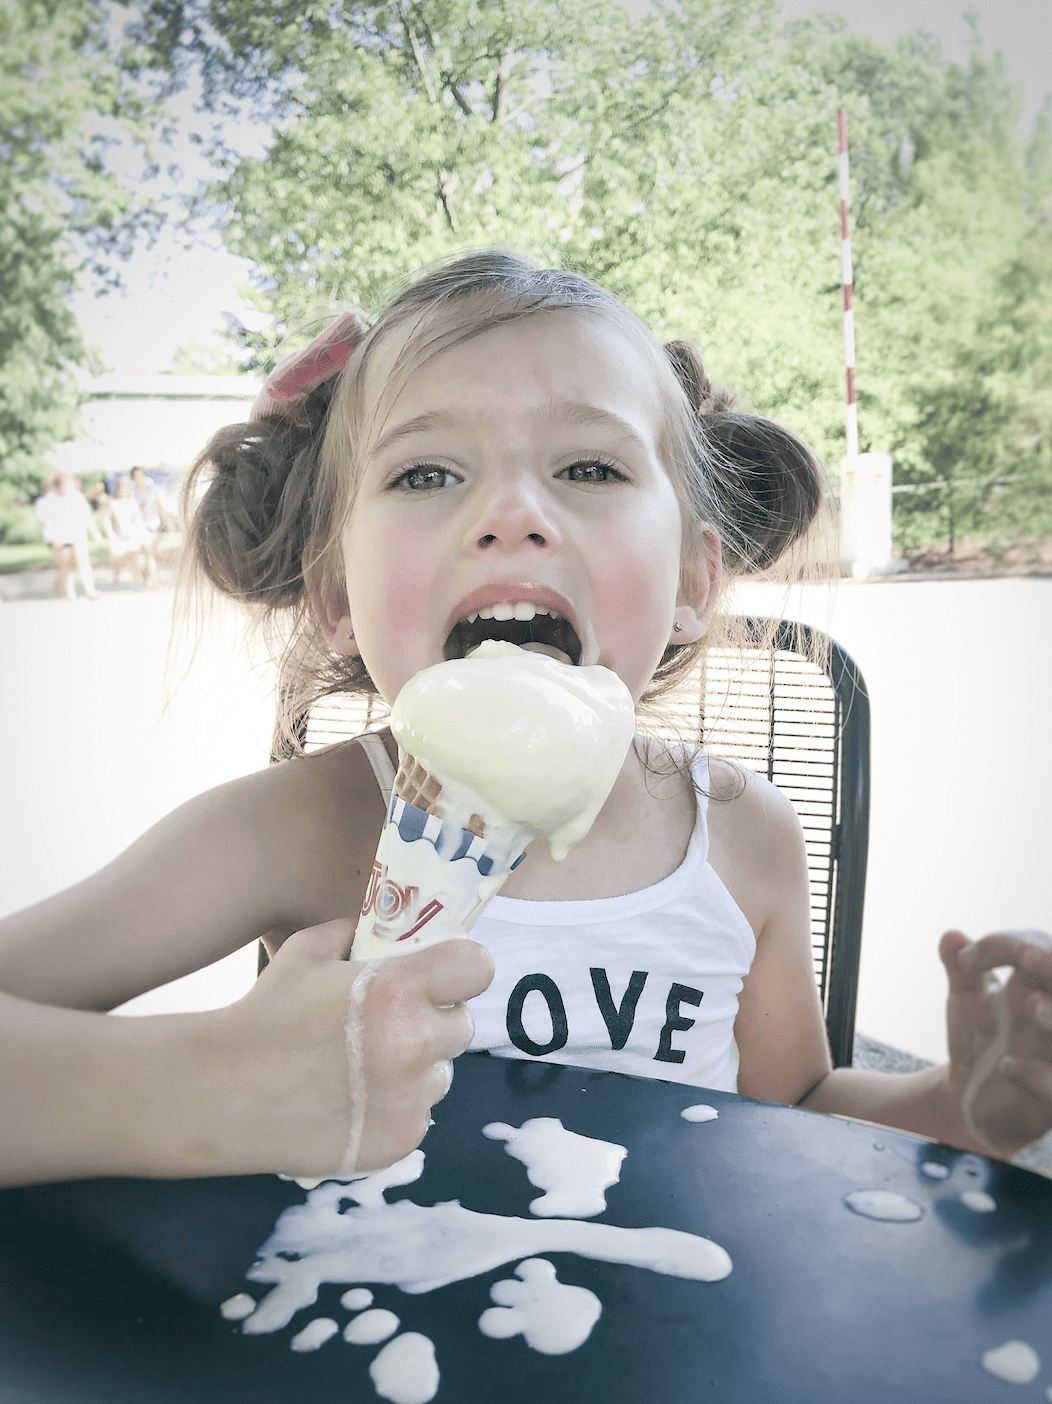 Best Kids Ice Cream Maker For Summer Fun Treats - arinsolangeathome